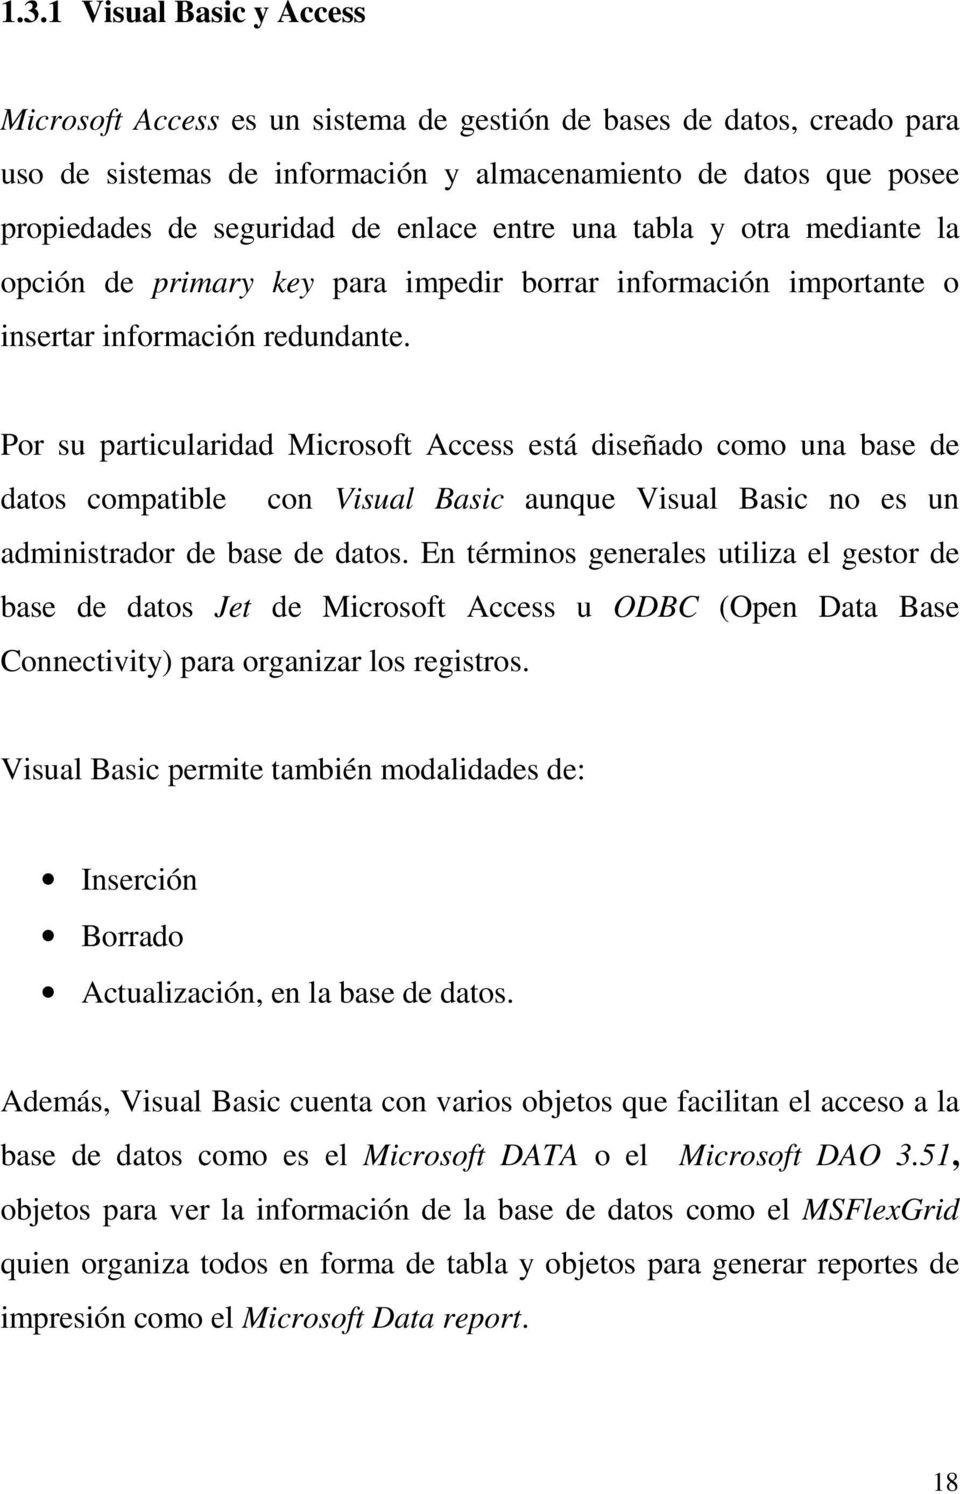 Por su particularidad Microsoft Access está diseñado como una base de datos compatible con Visual Basic aunque Visual Basic no es un administrador de base de datos.